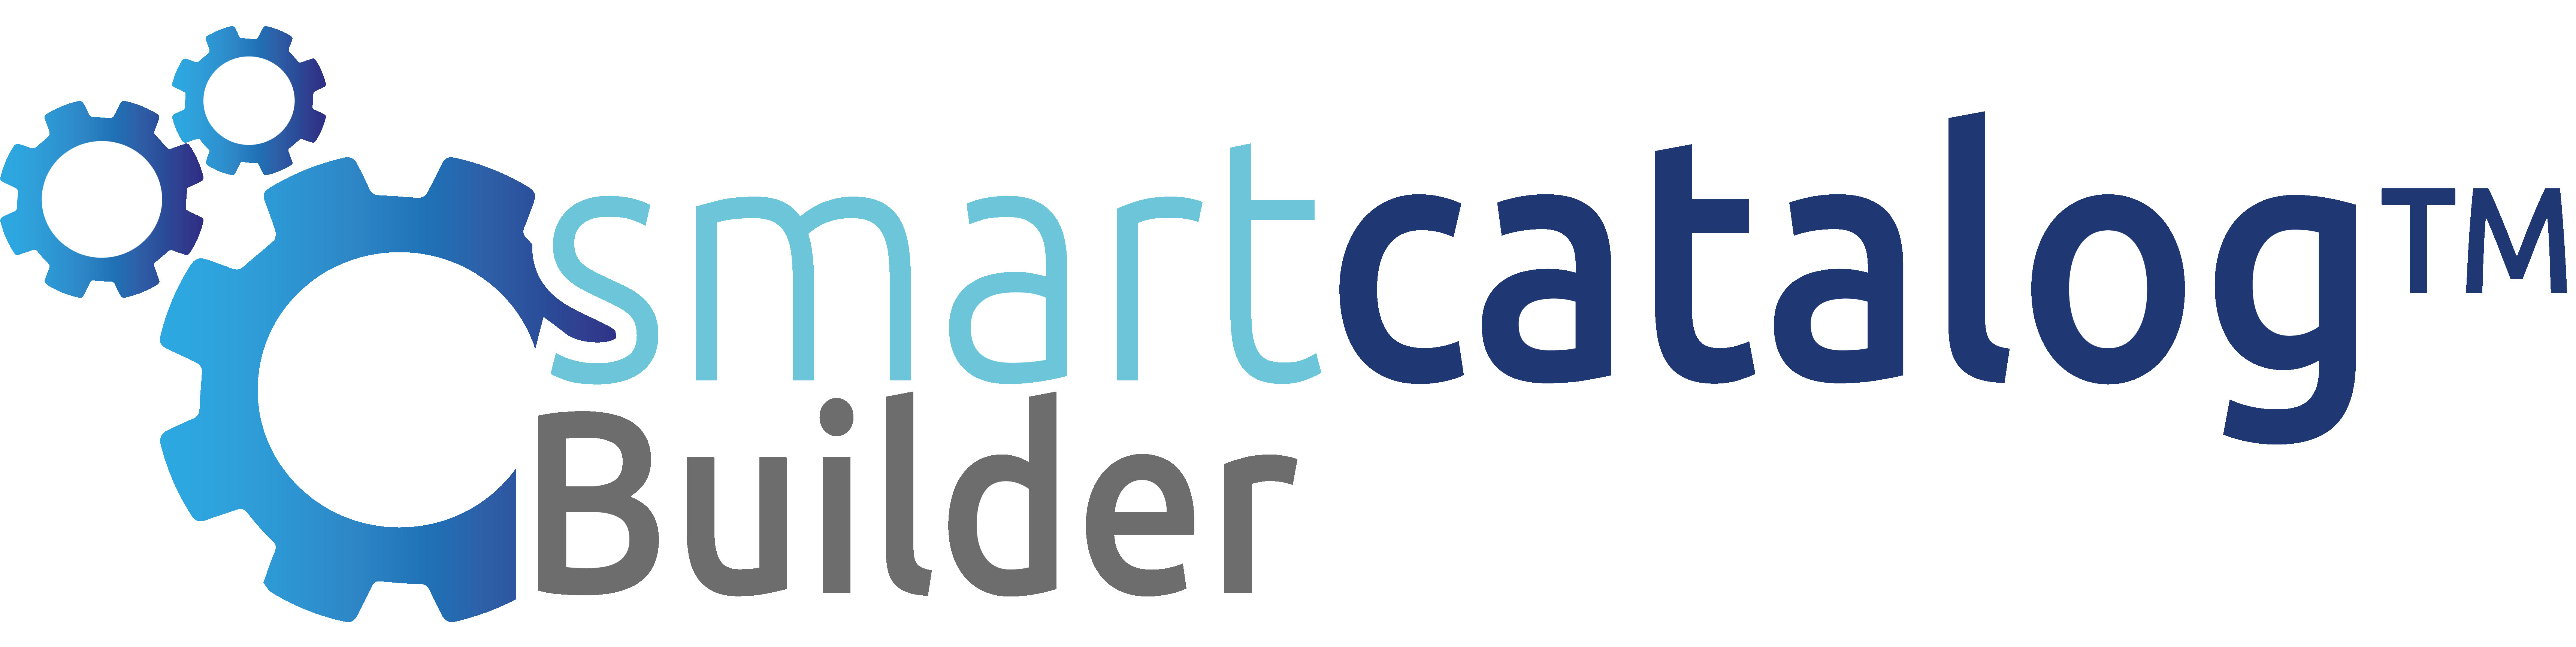 SmartCatalog Builder